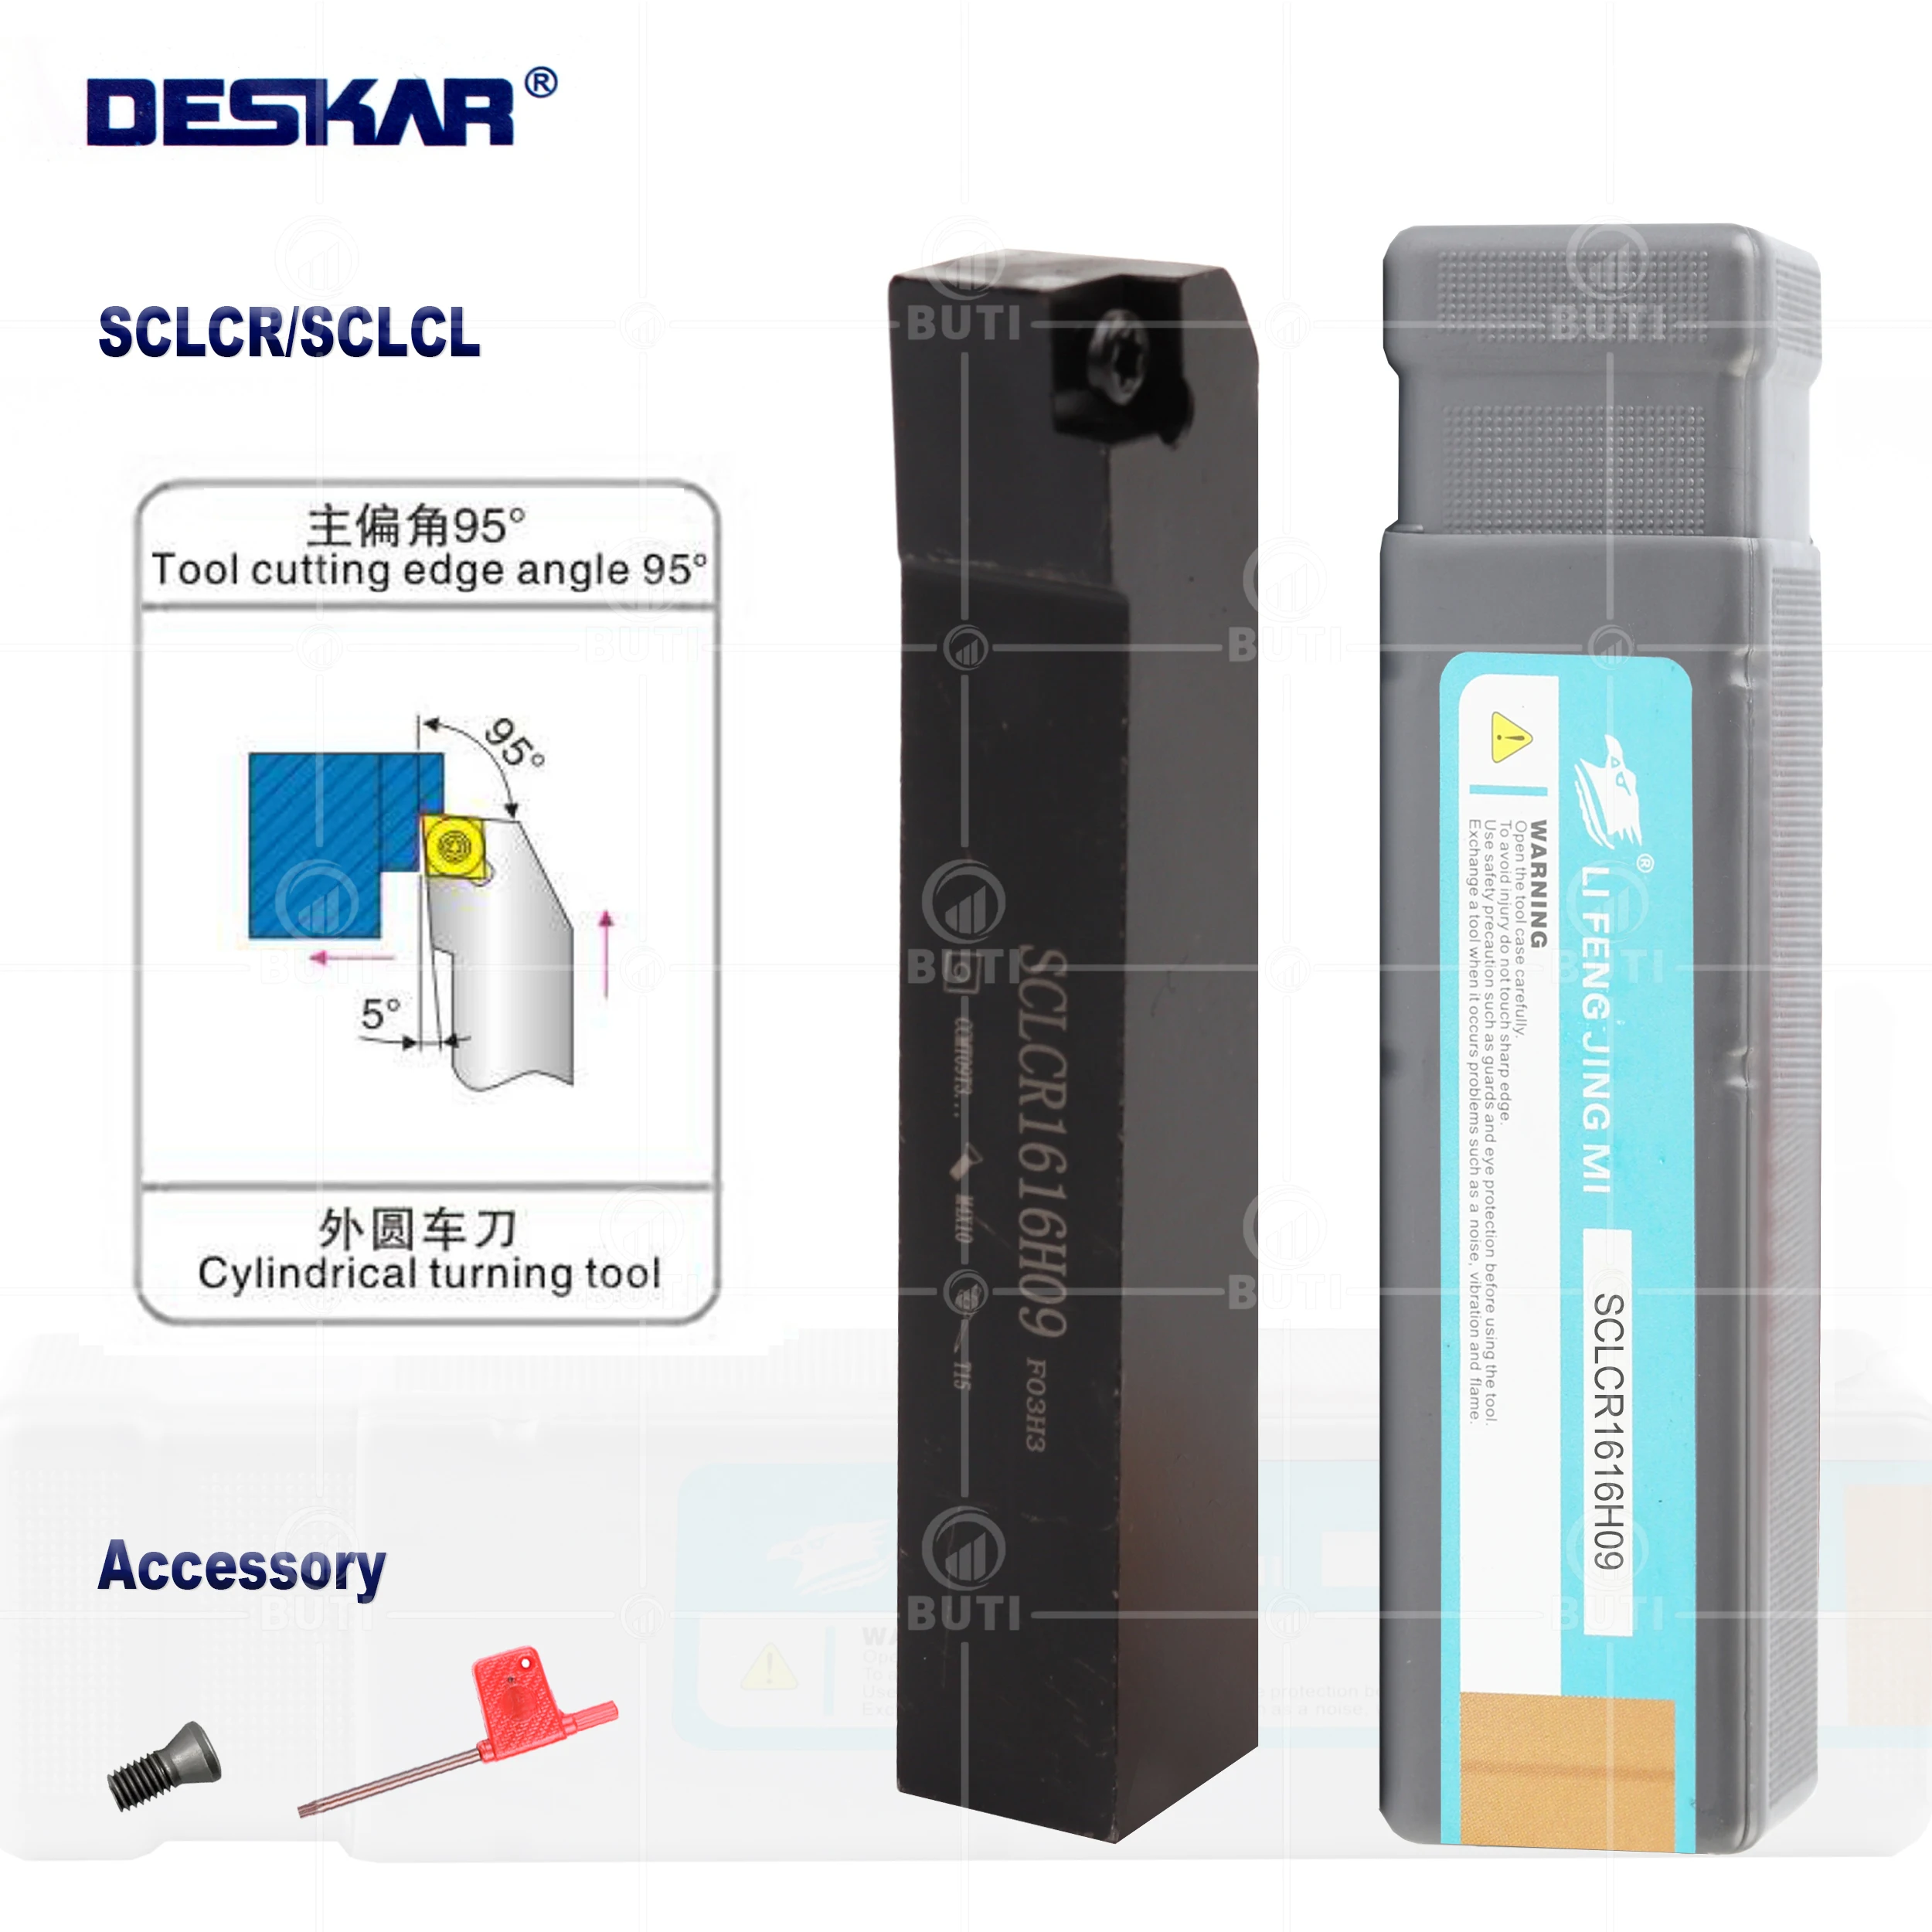 

DESKAR 100% Original SCLCR0808/1010/1212/1616/2020/2525 External Turning Tools SCLCR SCLCL CNC Cutting Holder Lathe Cutter Bar